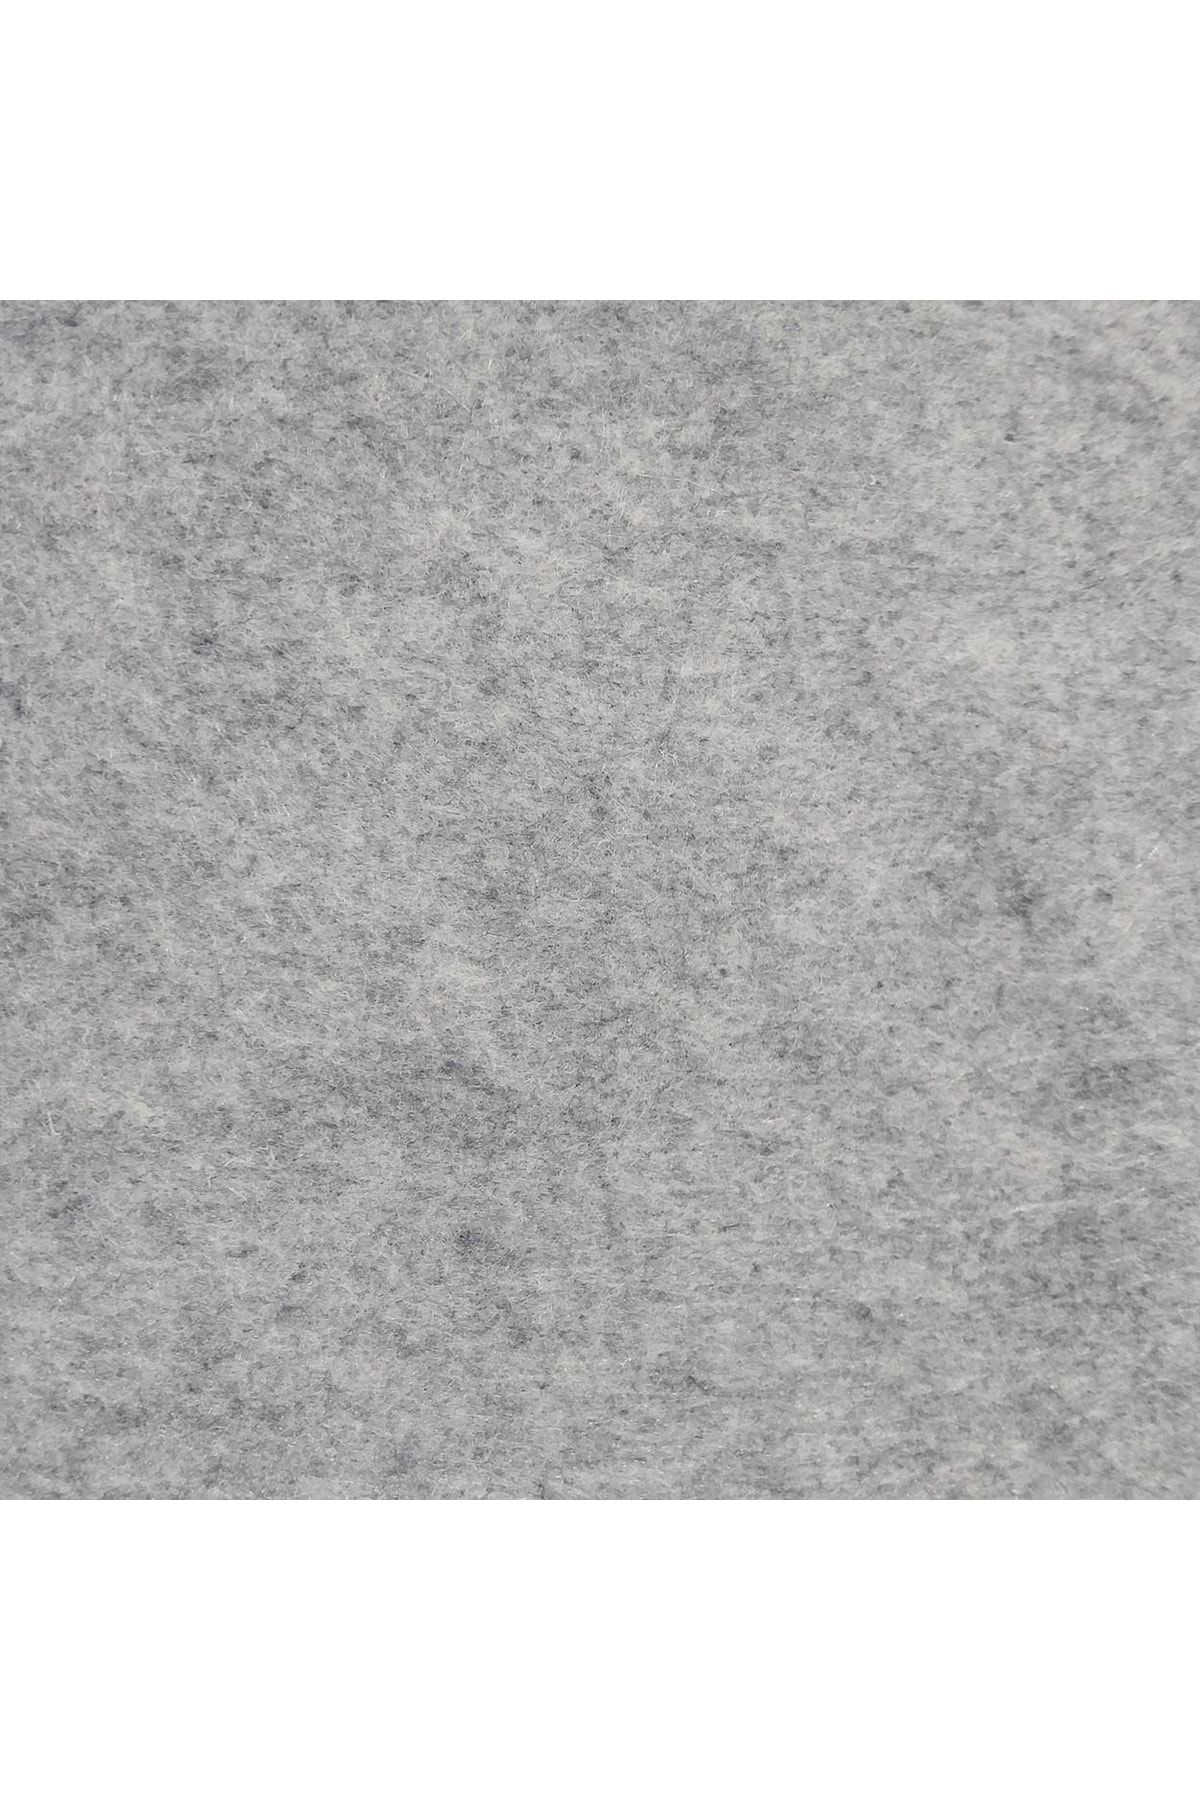 garaccu Kırçıllı Gri Kalın Keçe Kumaş 3 mm Kalınlığında (50 X 100 cm) Kalın Rulo Keçe